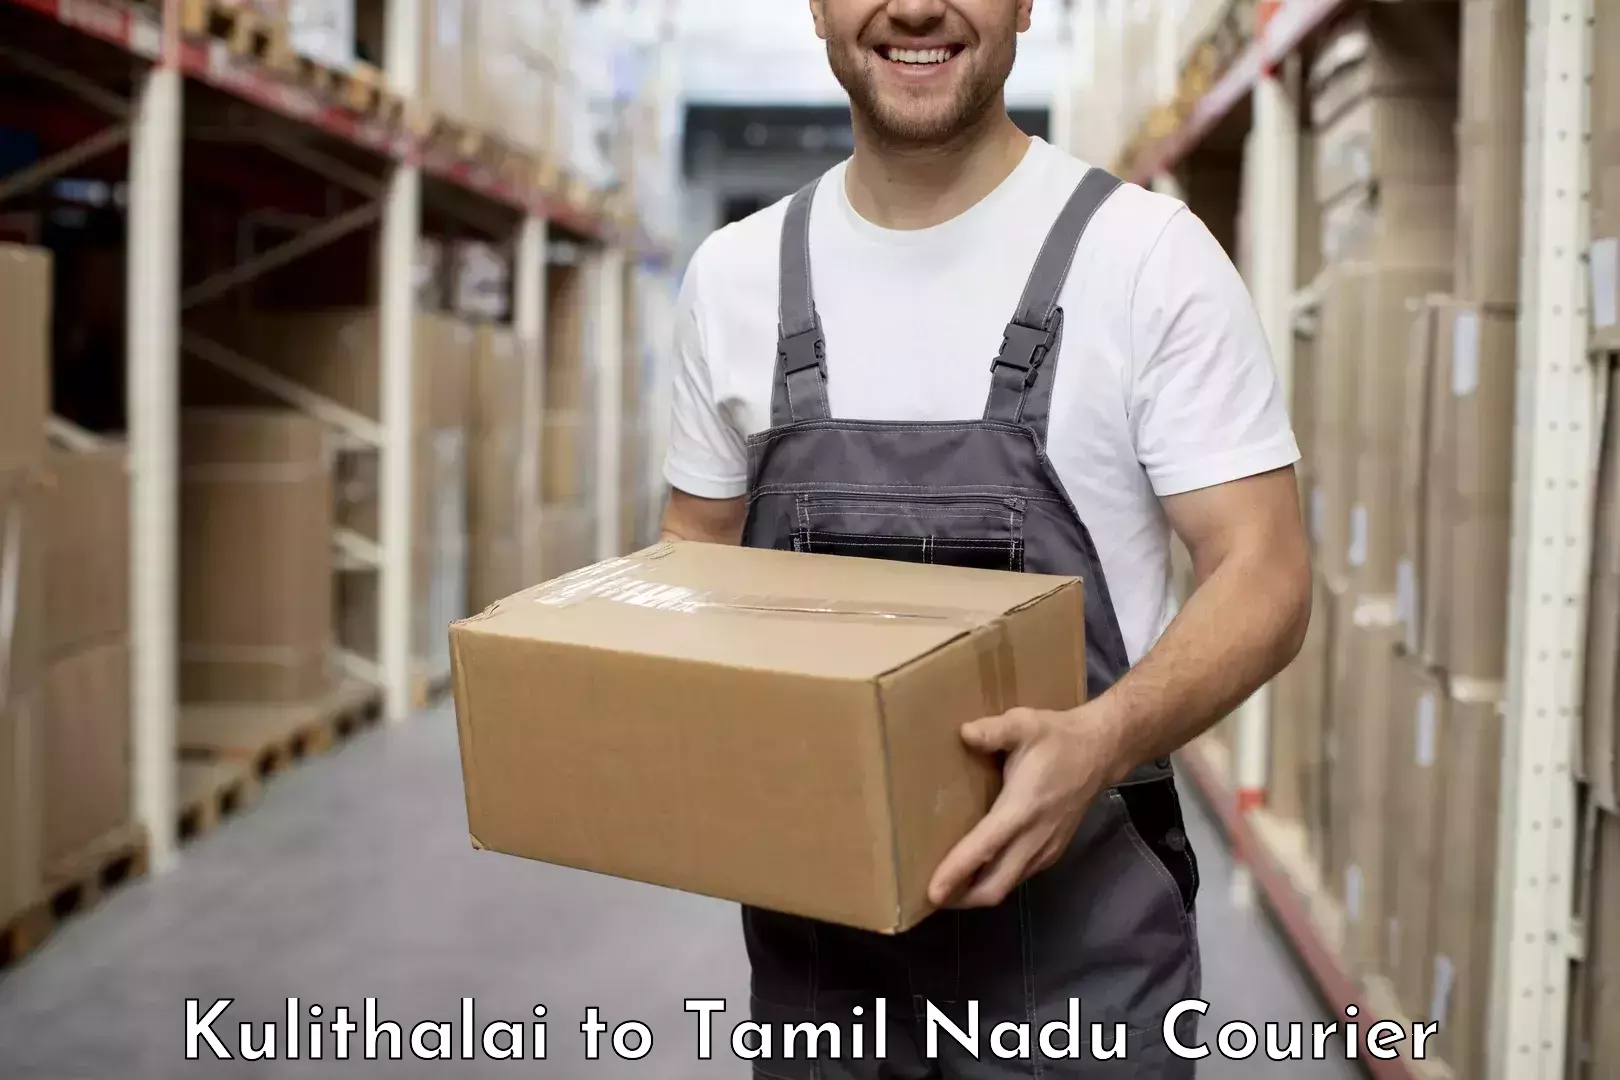 Efficient parcel transport Kulithalai to Periyakulam